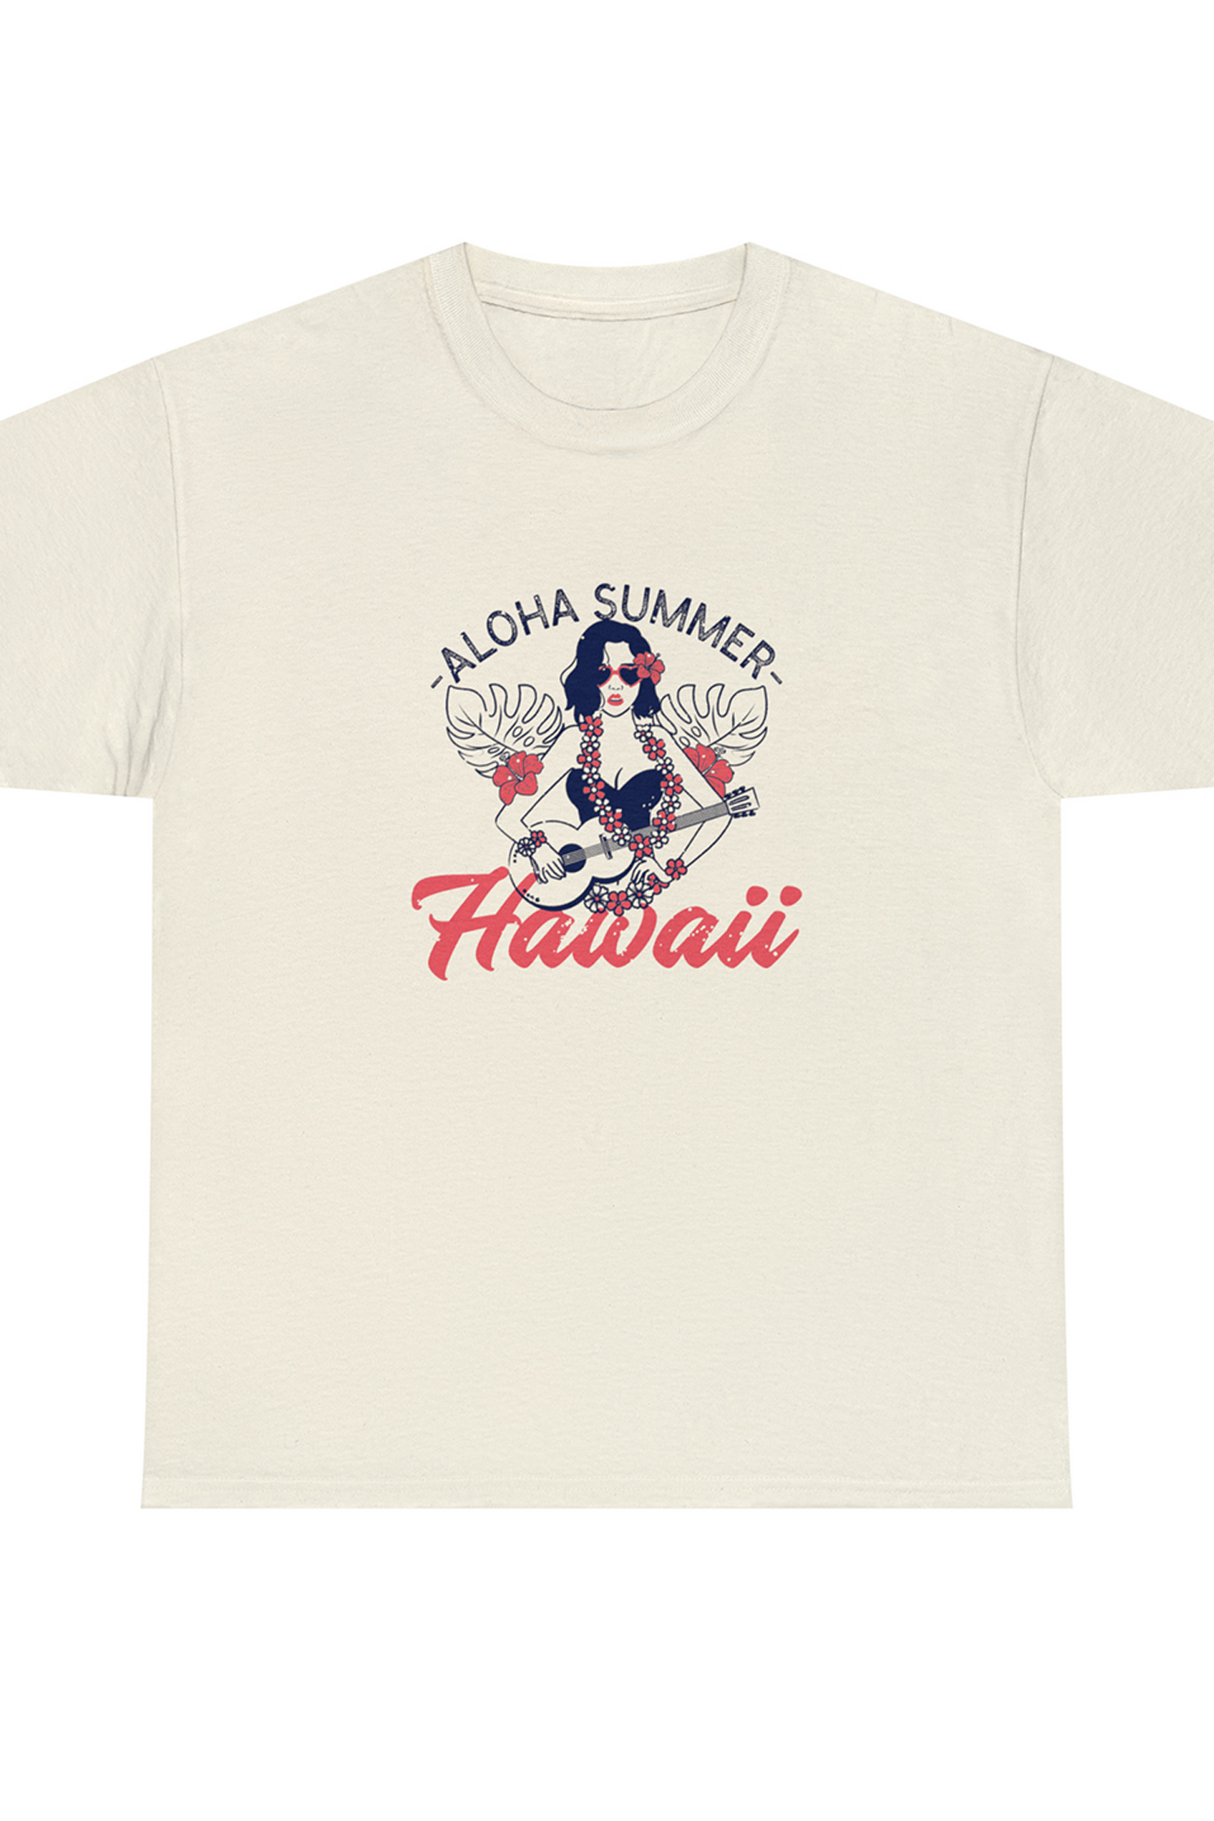 Hawaii Aloha Summer Graphic Tee Shirt